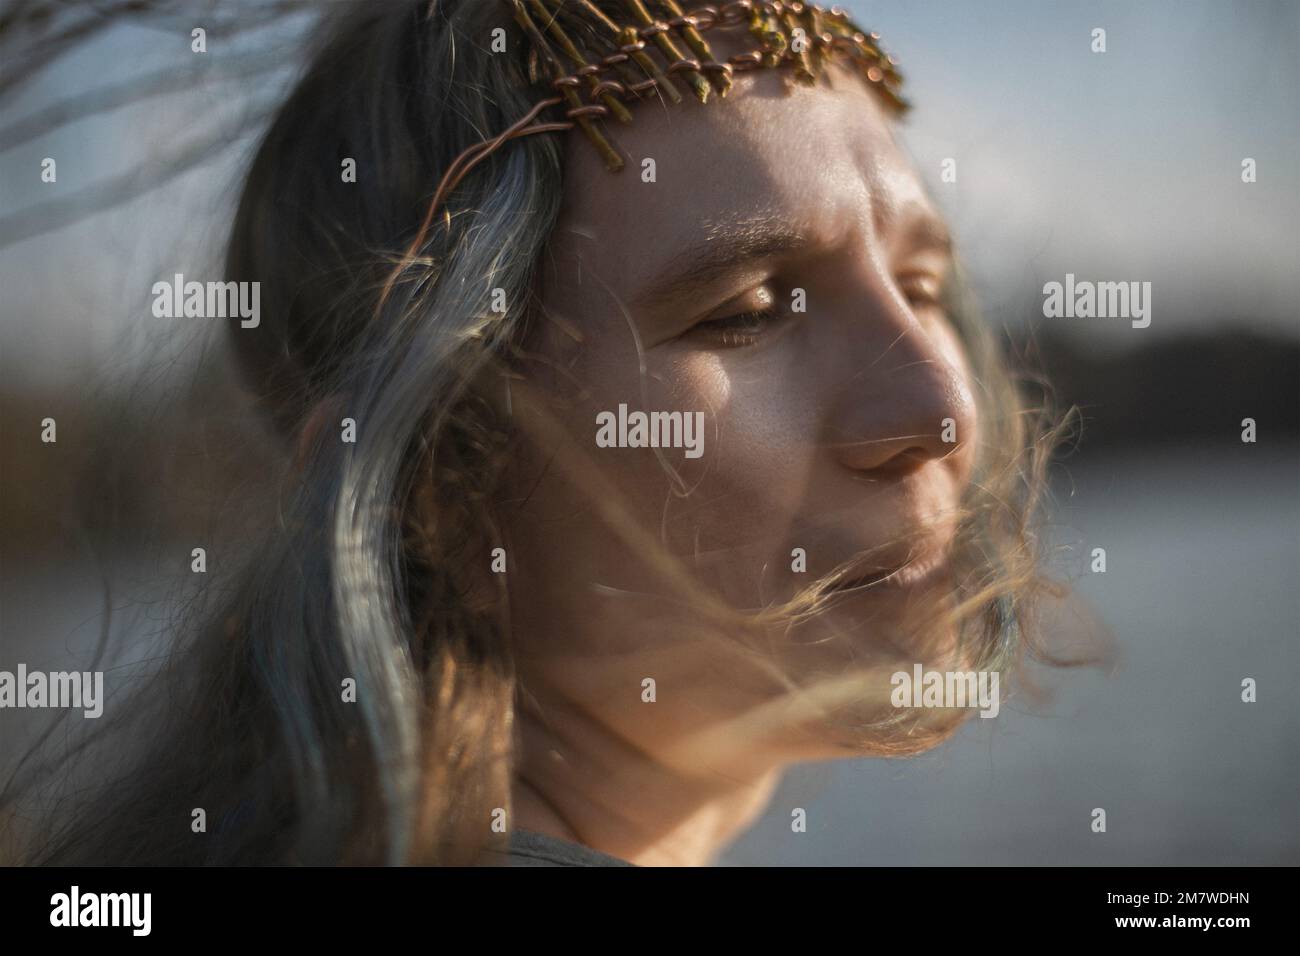 Nahaufnahme träumende Erwachsene Frau mit flatterndem grauen Haar Porträt Bild Stockfoto